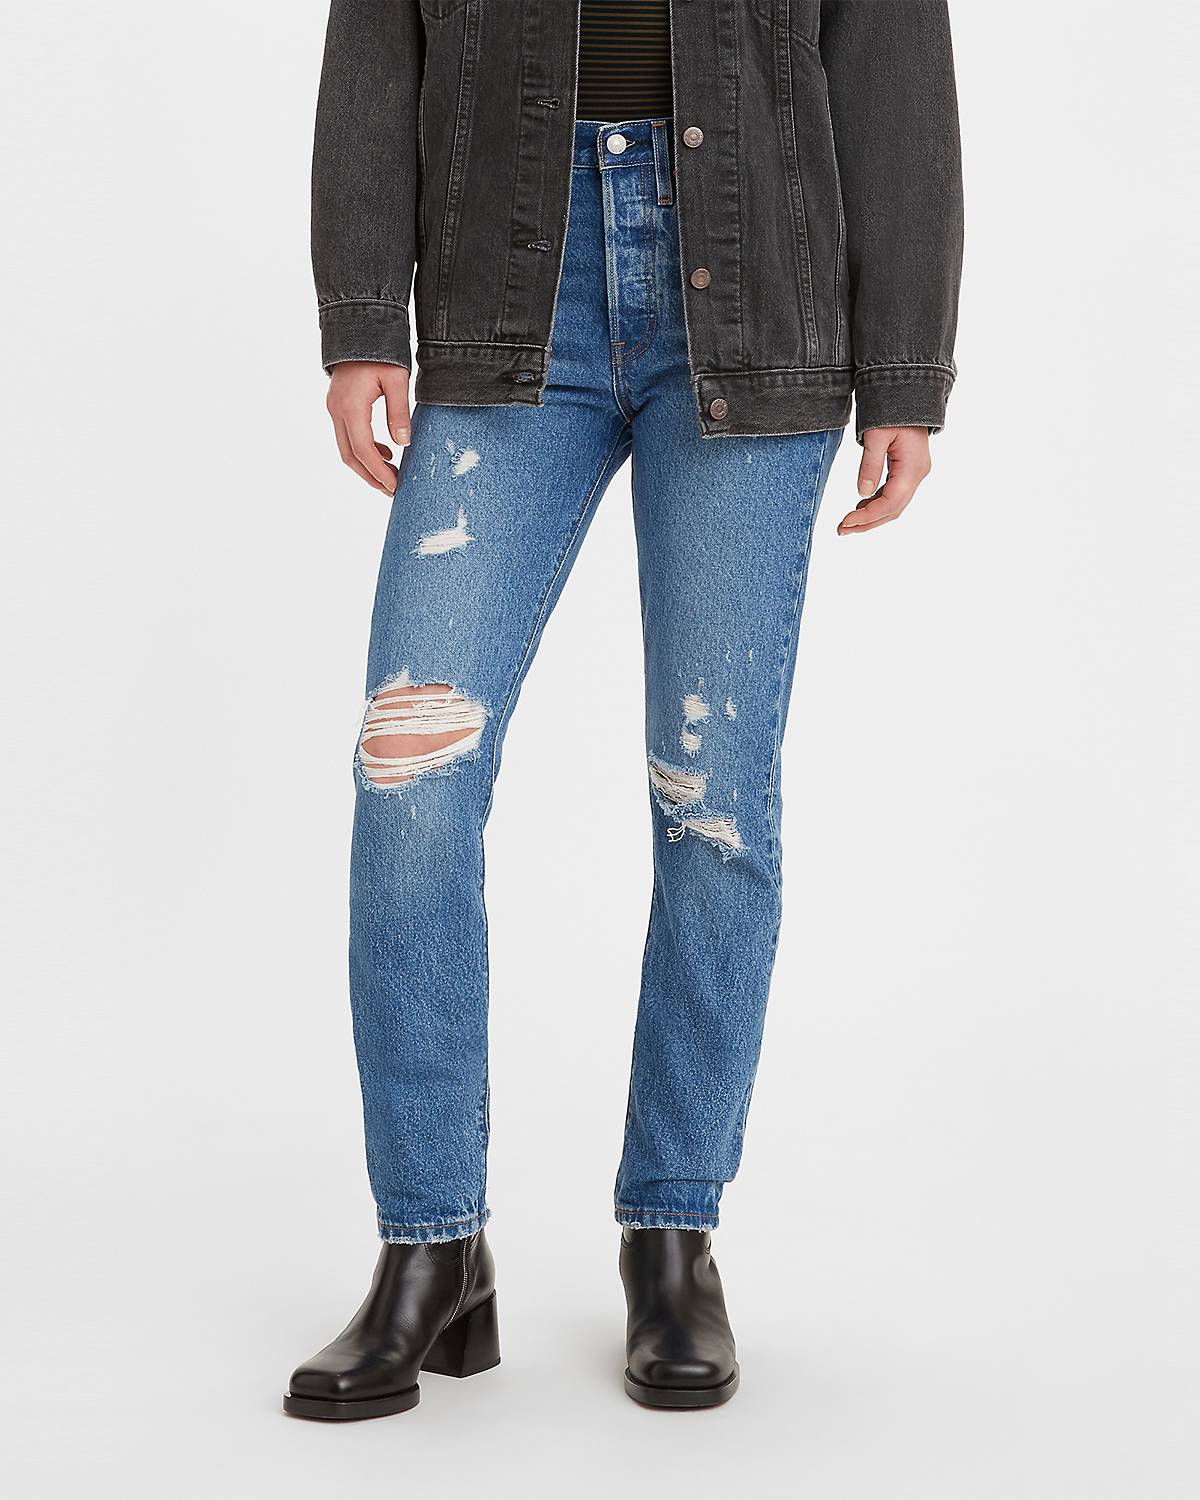 Model wearing 501® Skinny jeans